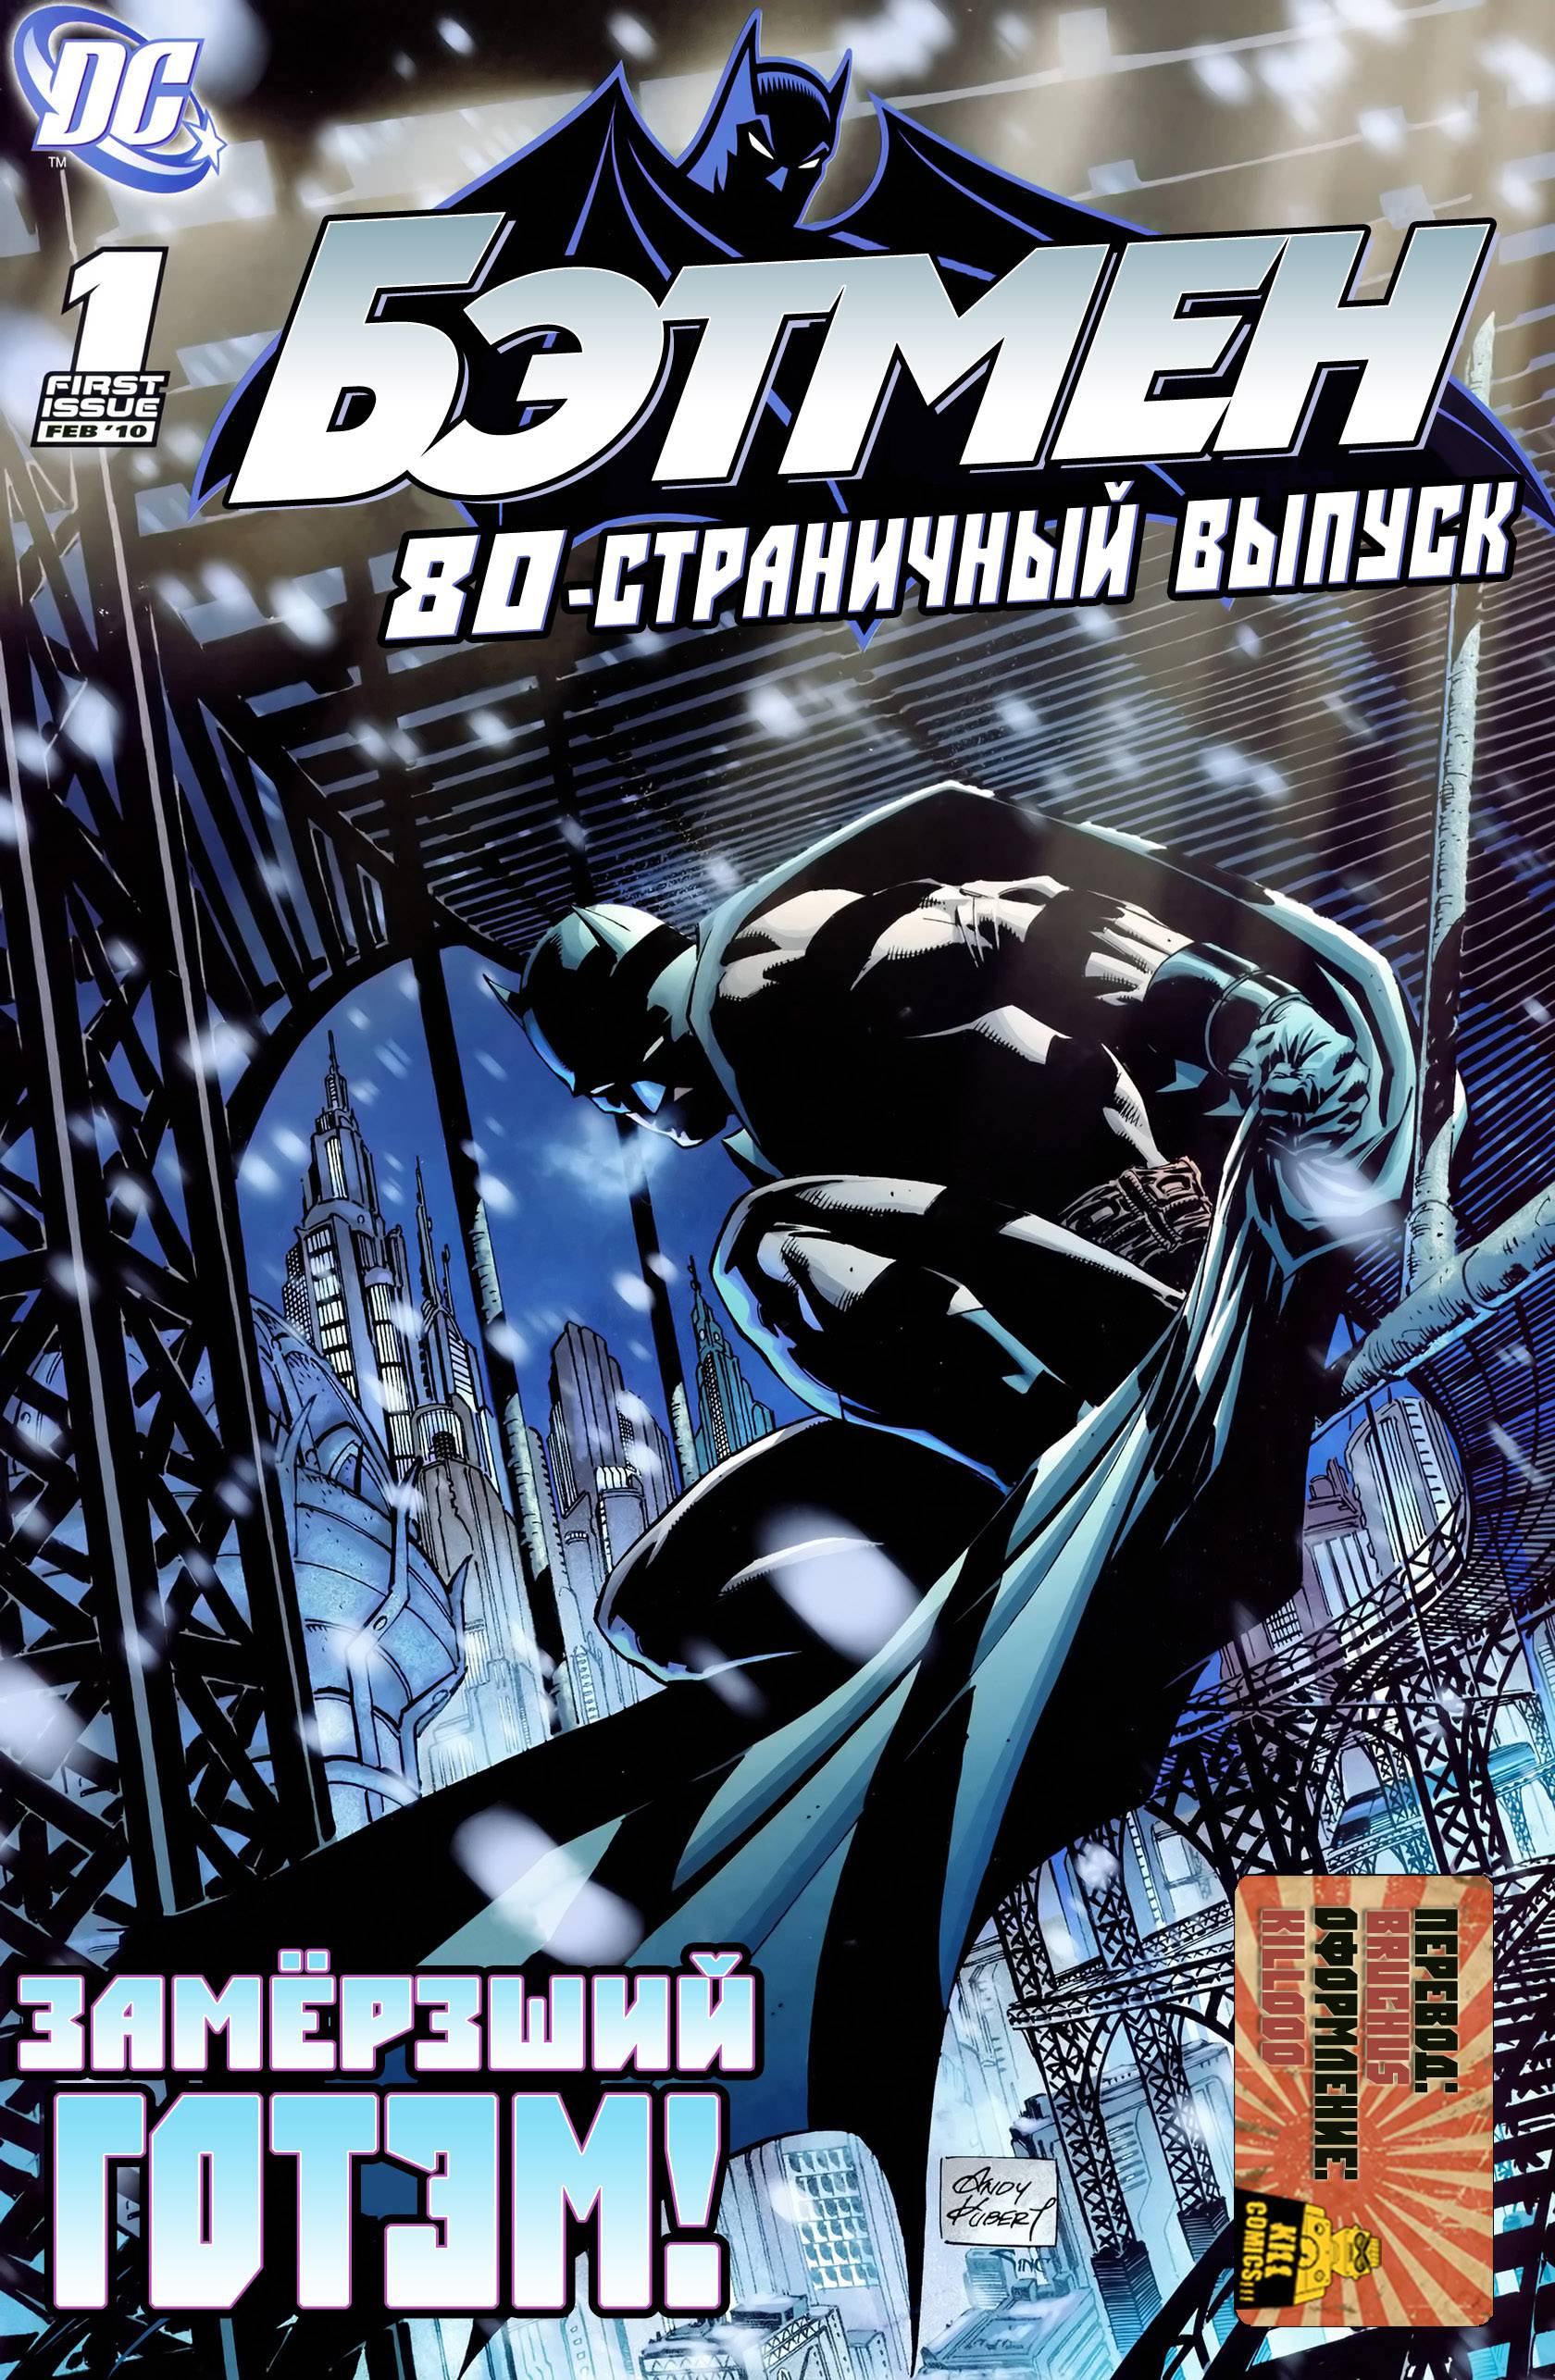 Бэтмен 80-страничный Выпуск онлайн